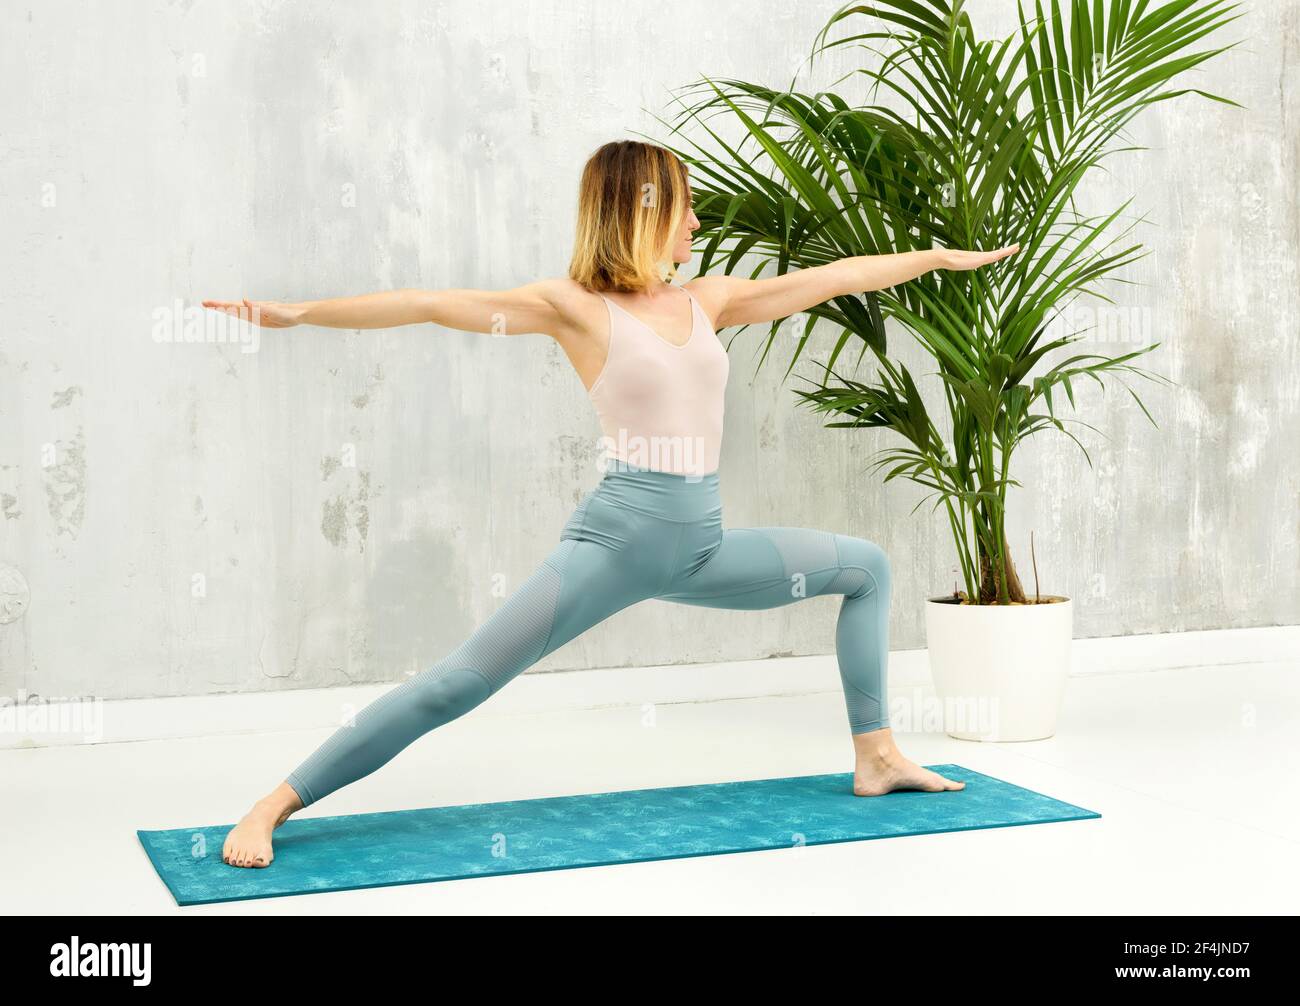 Frau, die eine Virabhadrasana II vorwärts Ausfallschritt Yoga Pose tut, um ihre Oberschenkel-, Hüftbeuge- und Leistenmuskeln in einer Gesundheit und Fitness zu dehnen und zu stärken Stockfoto